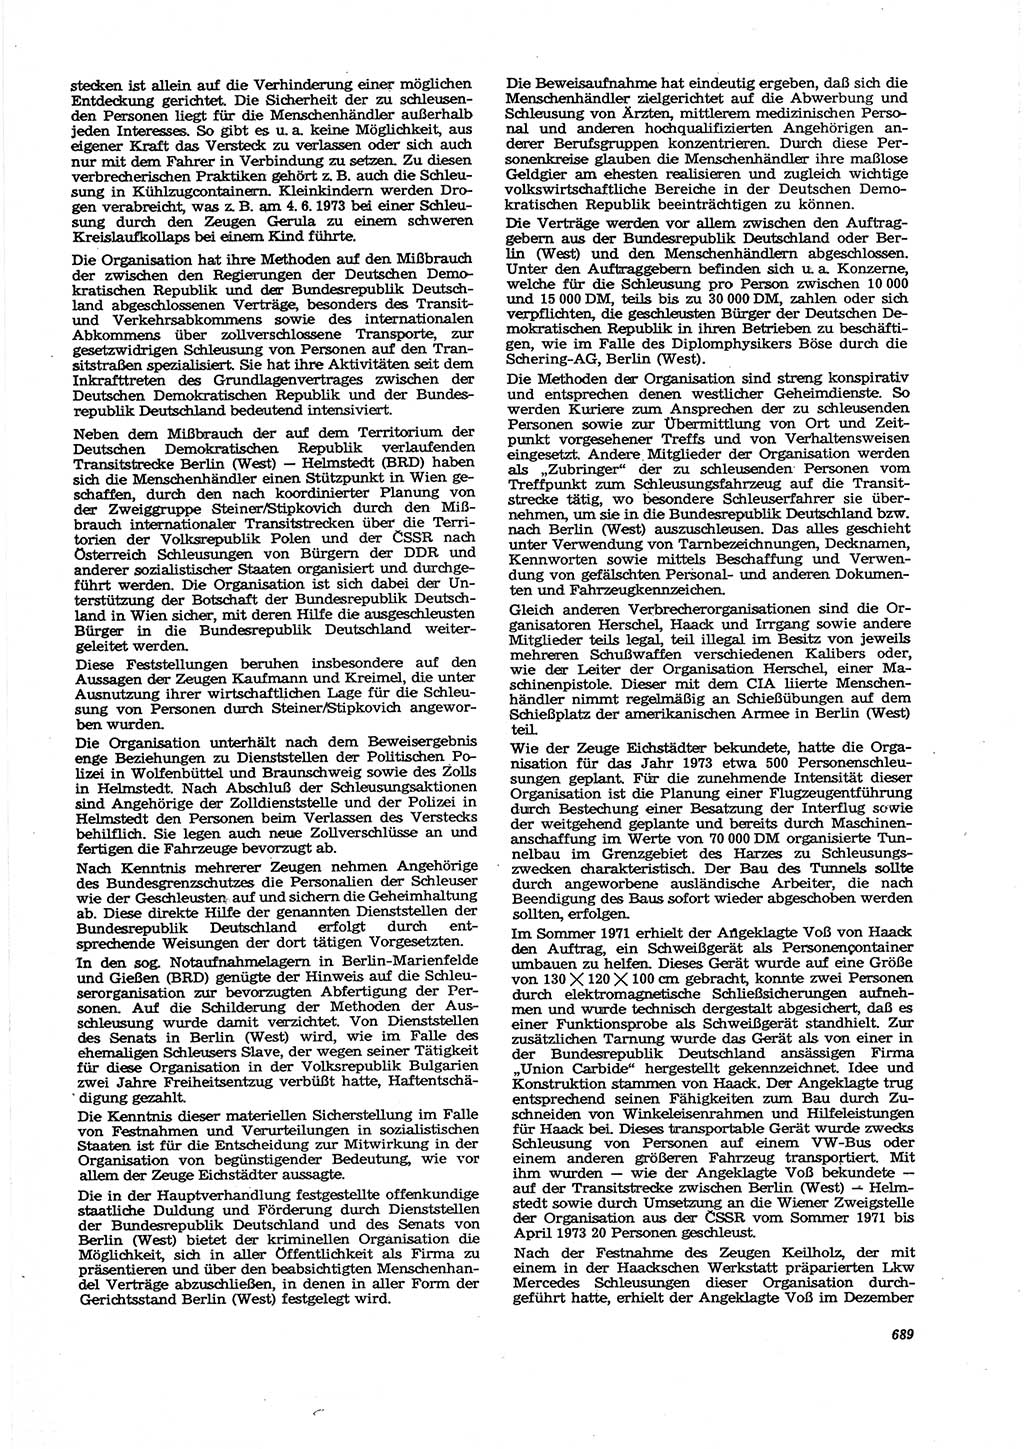 Neue Justiz (NJ), Zeitschrift für Recht und Rechtswissenschaft [Deutsche Demokratische Republik (DDR)], 27. Jahrgang 1973, Seite 689 (NJ DDR 1973, S. 689)